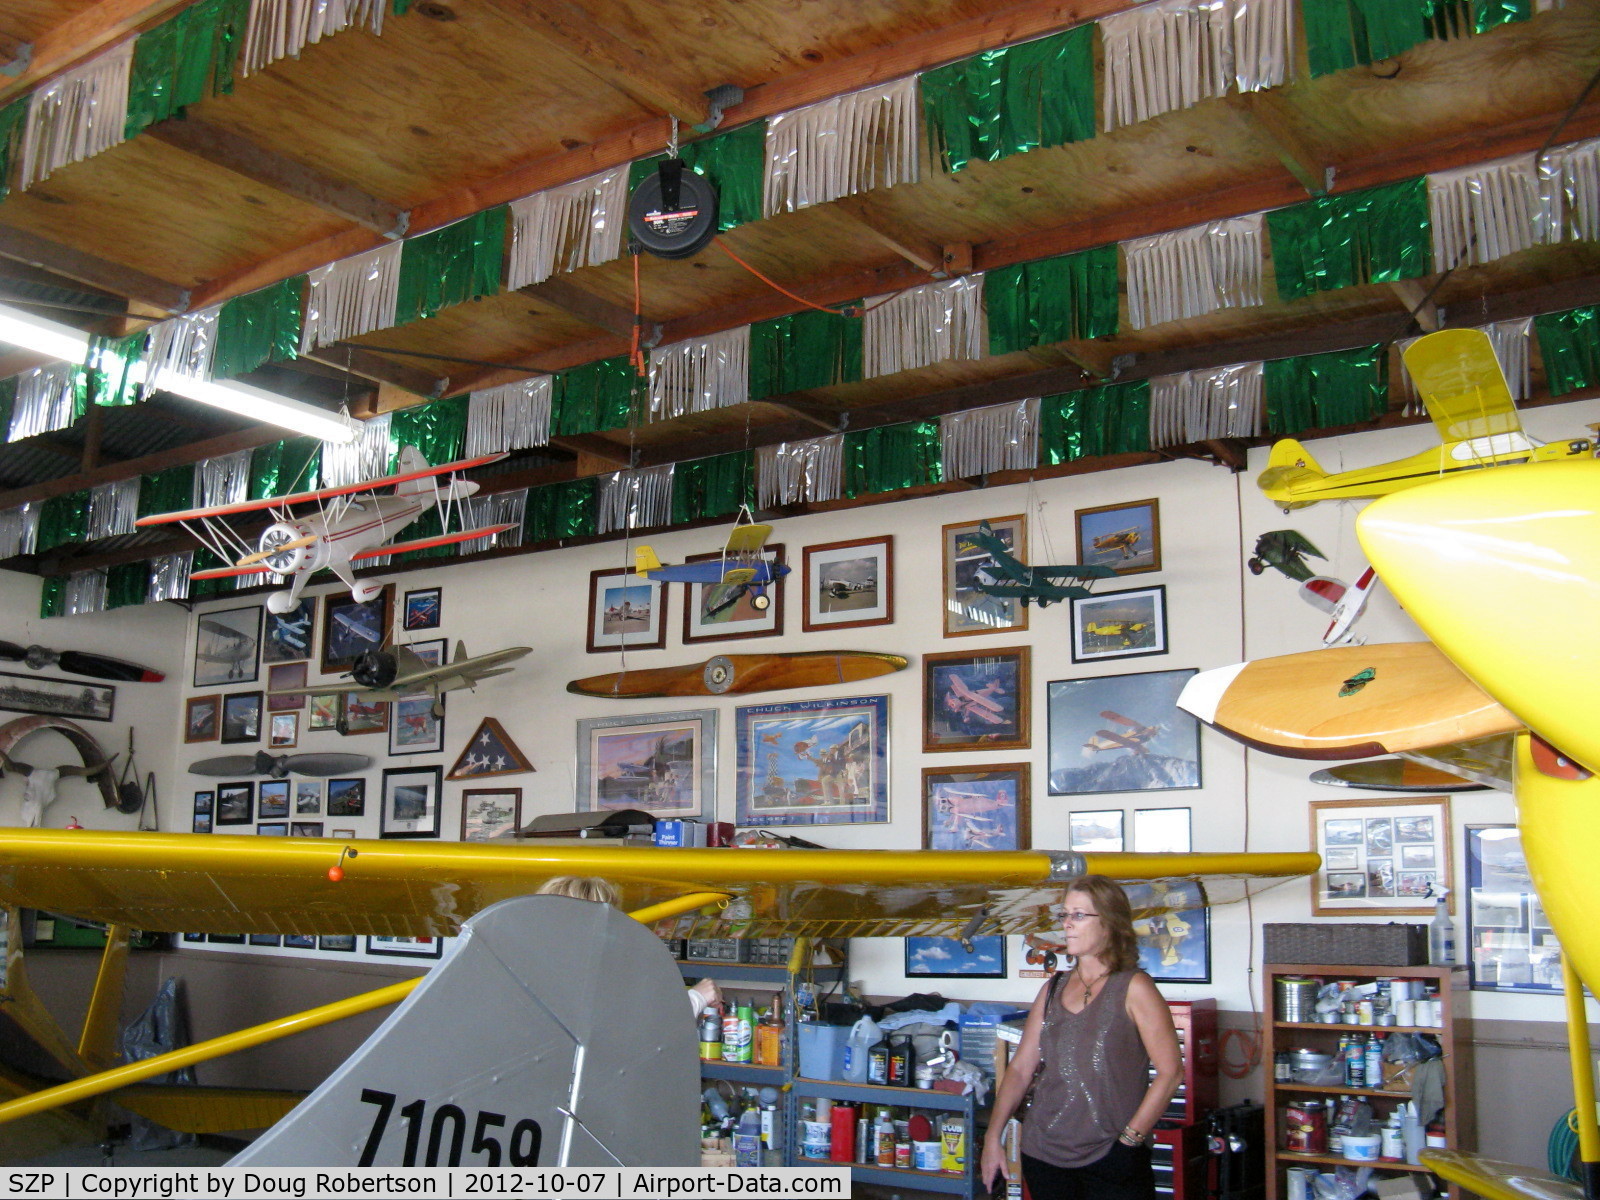 Santa Paula Airport (SZP) - Aviation Museum of Santa Paula. The Quinn Museum Hangar.